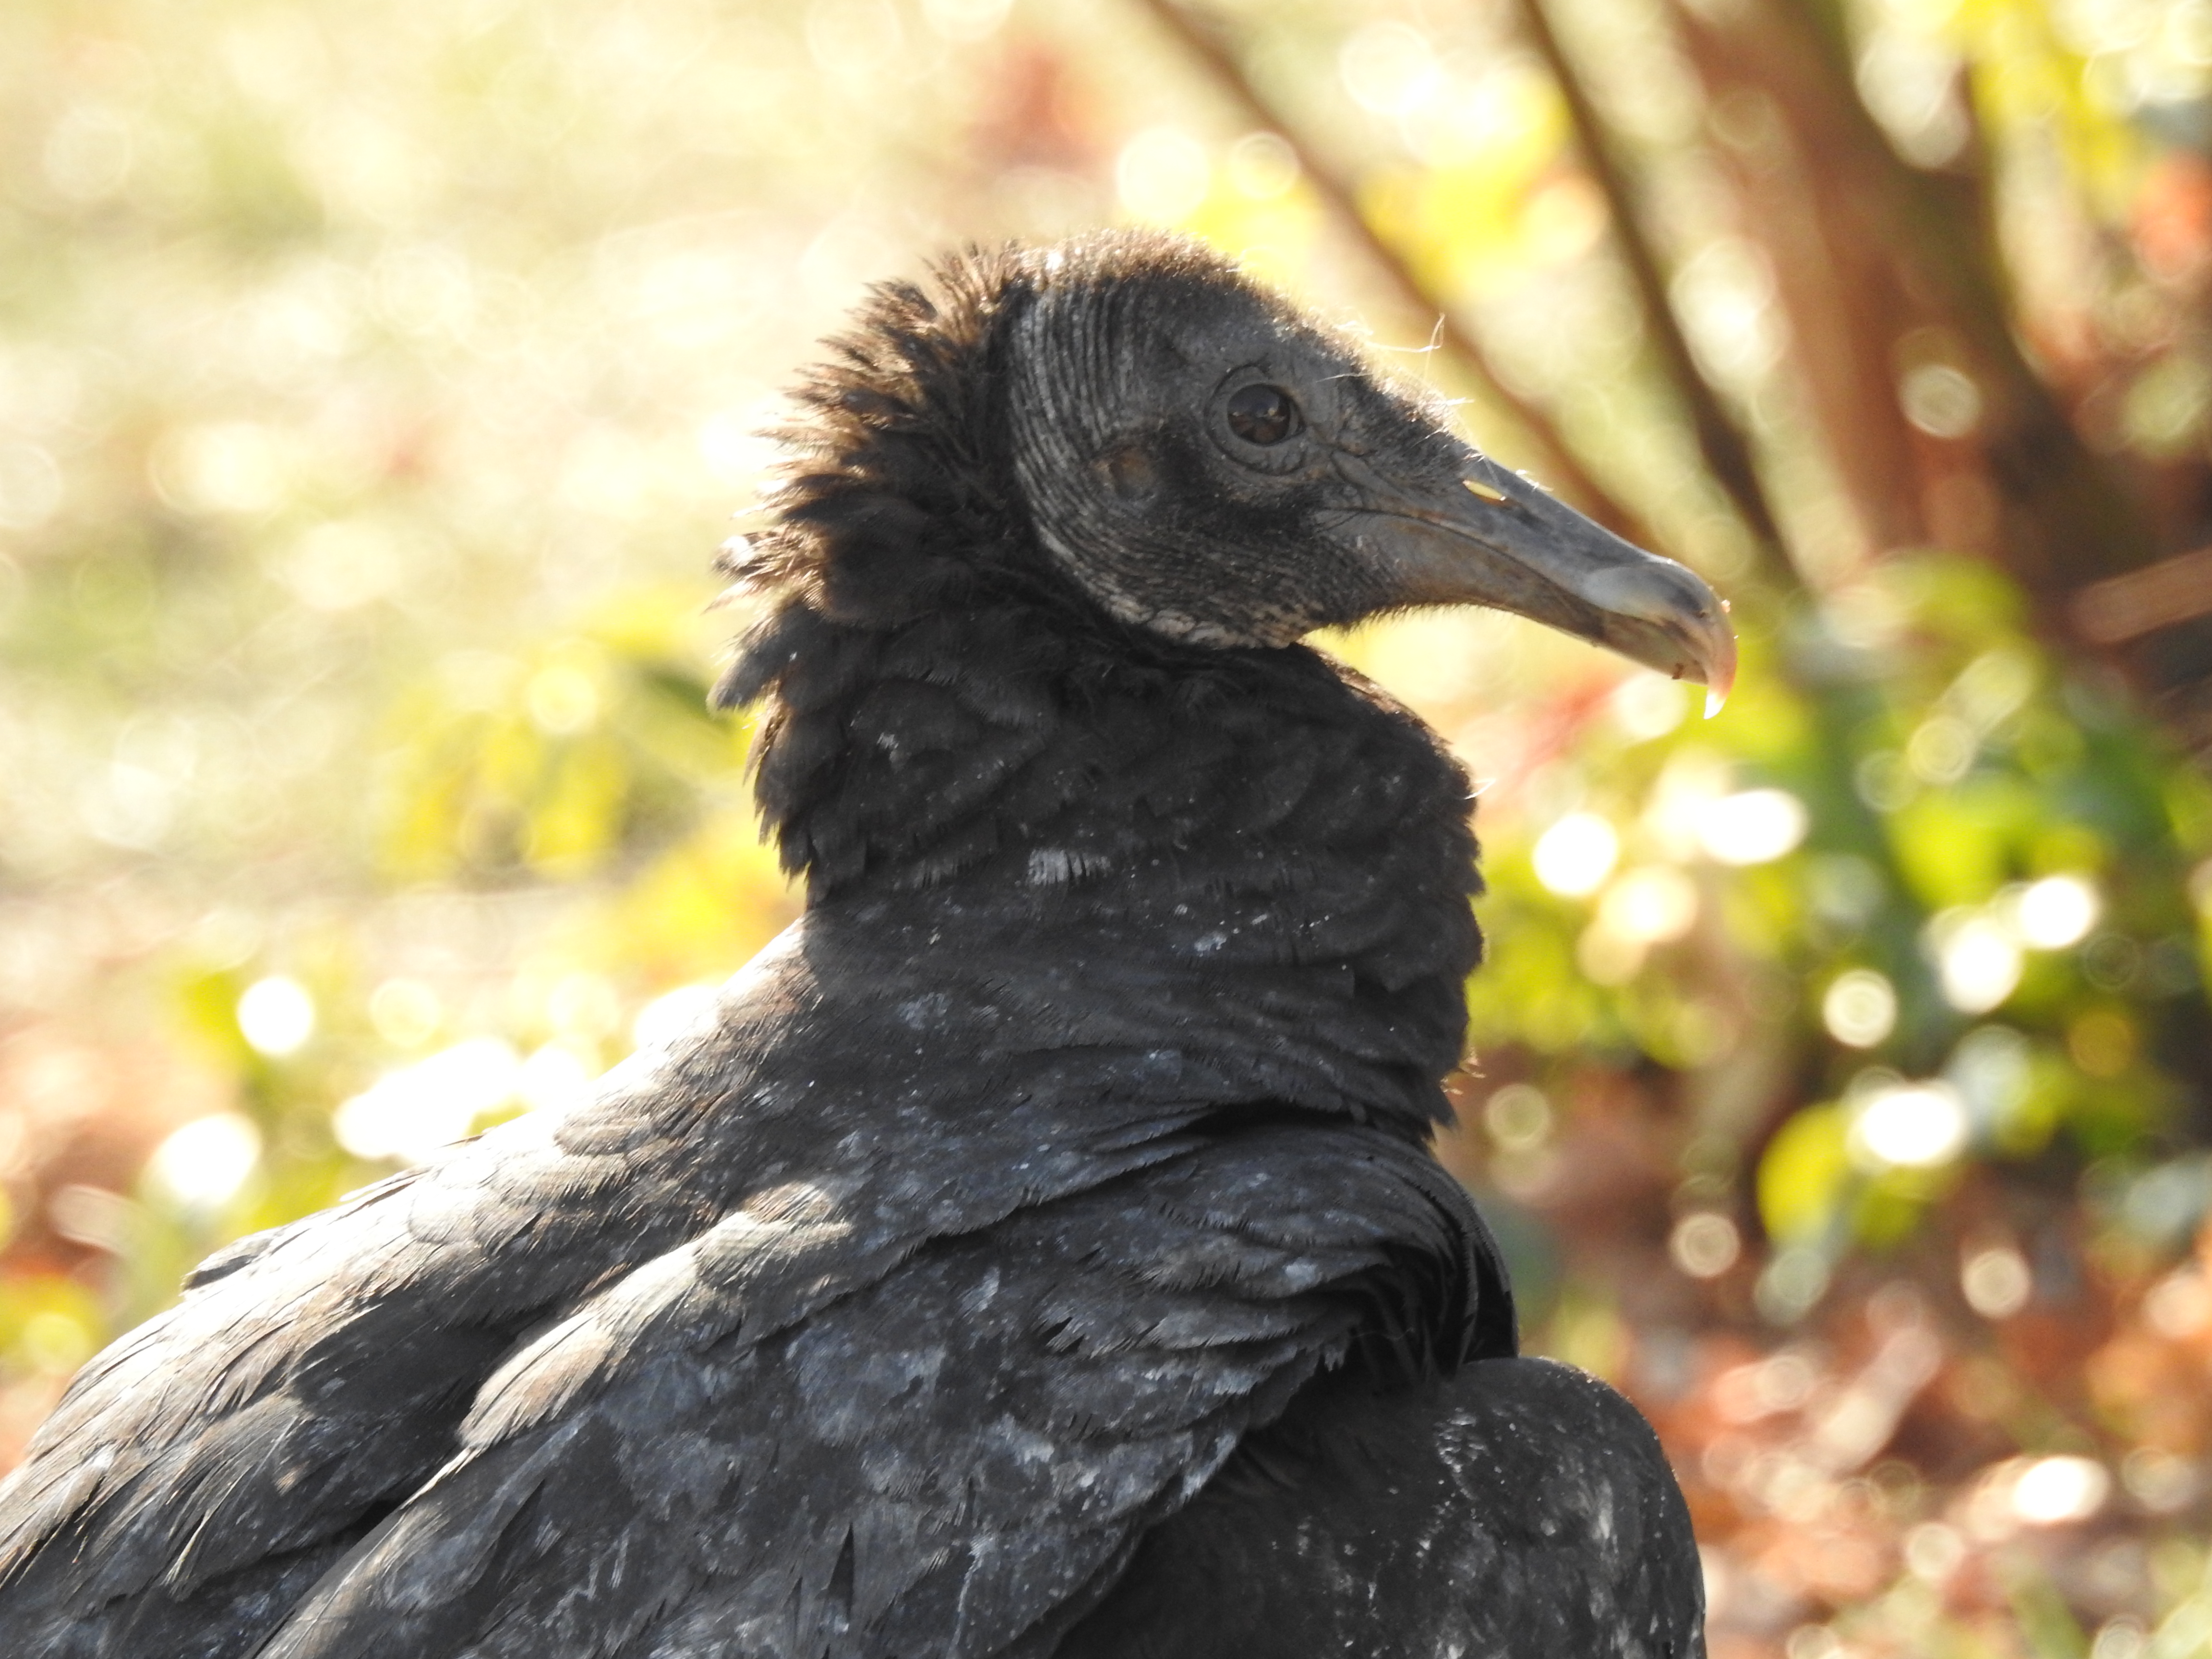 Black Vulture by Tait Johansson